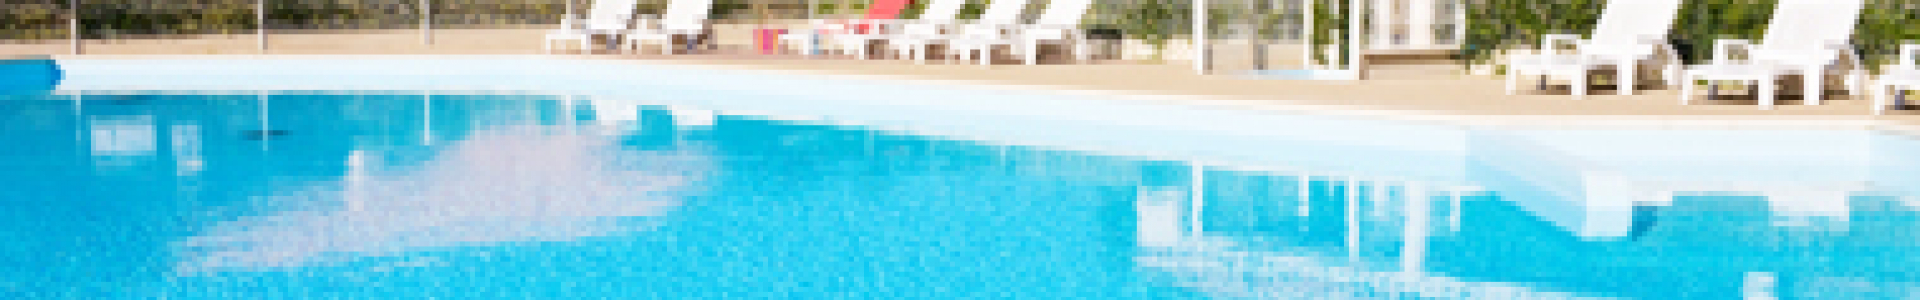 Locasun VP : ventes flash locations 8j/7n en résidences avec piscines chauffées, - 43%